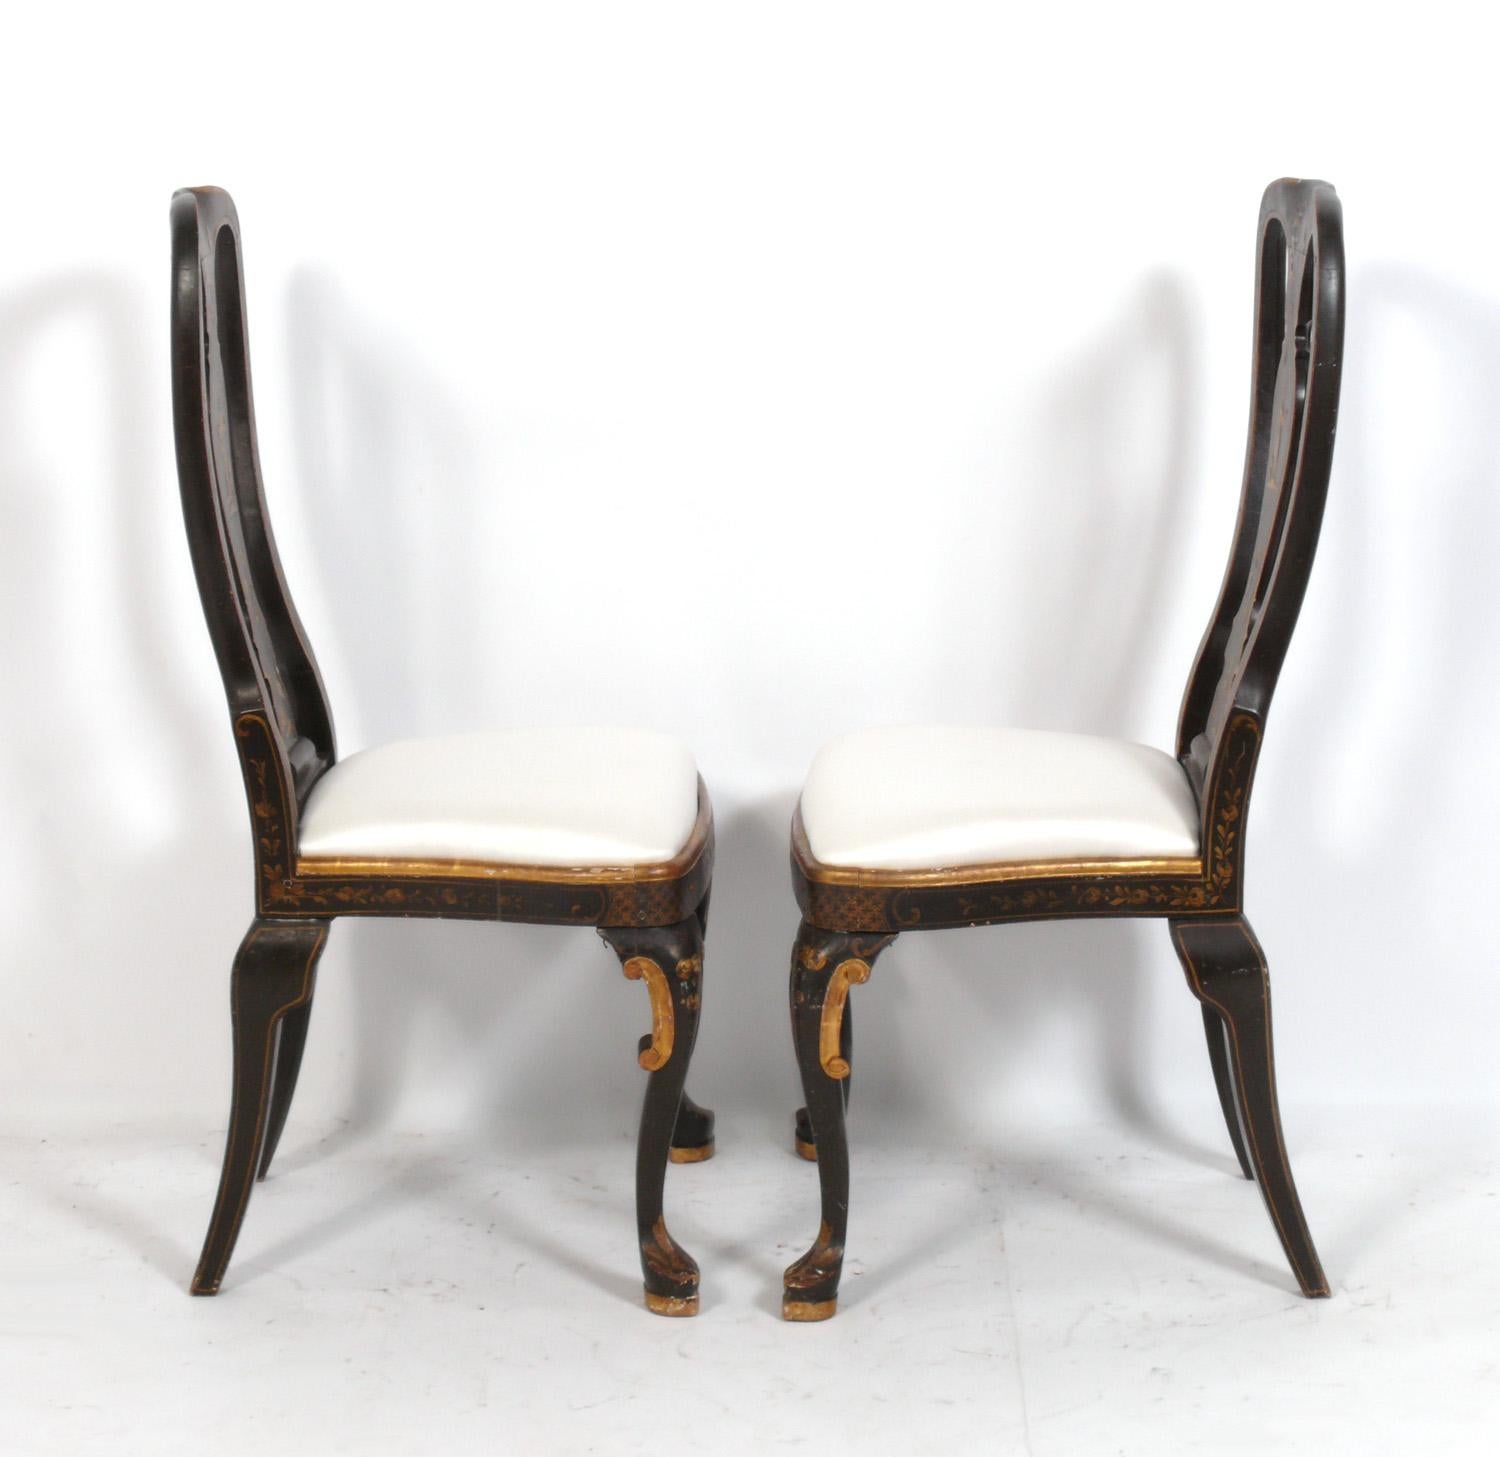 Chinese 19th Century Chinoiserie Chairs